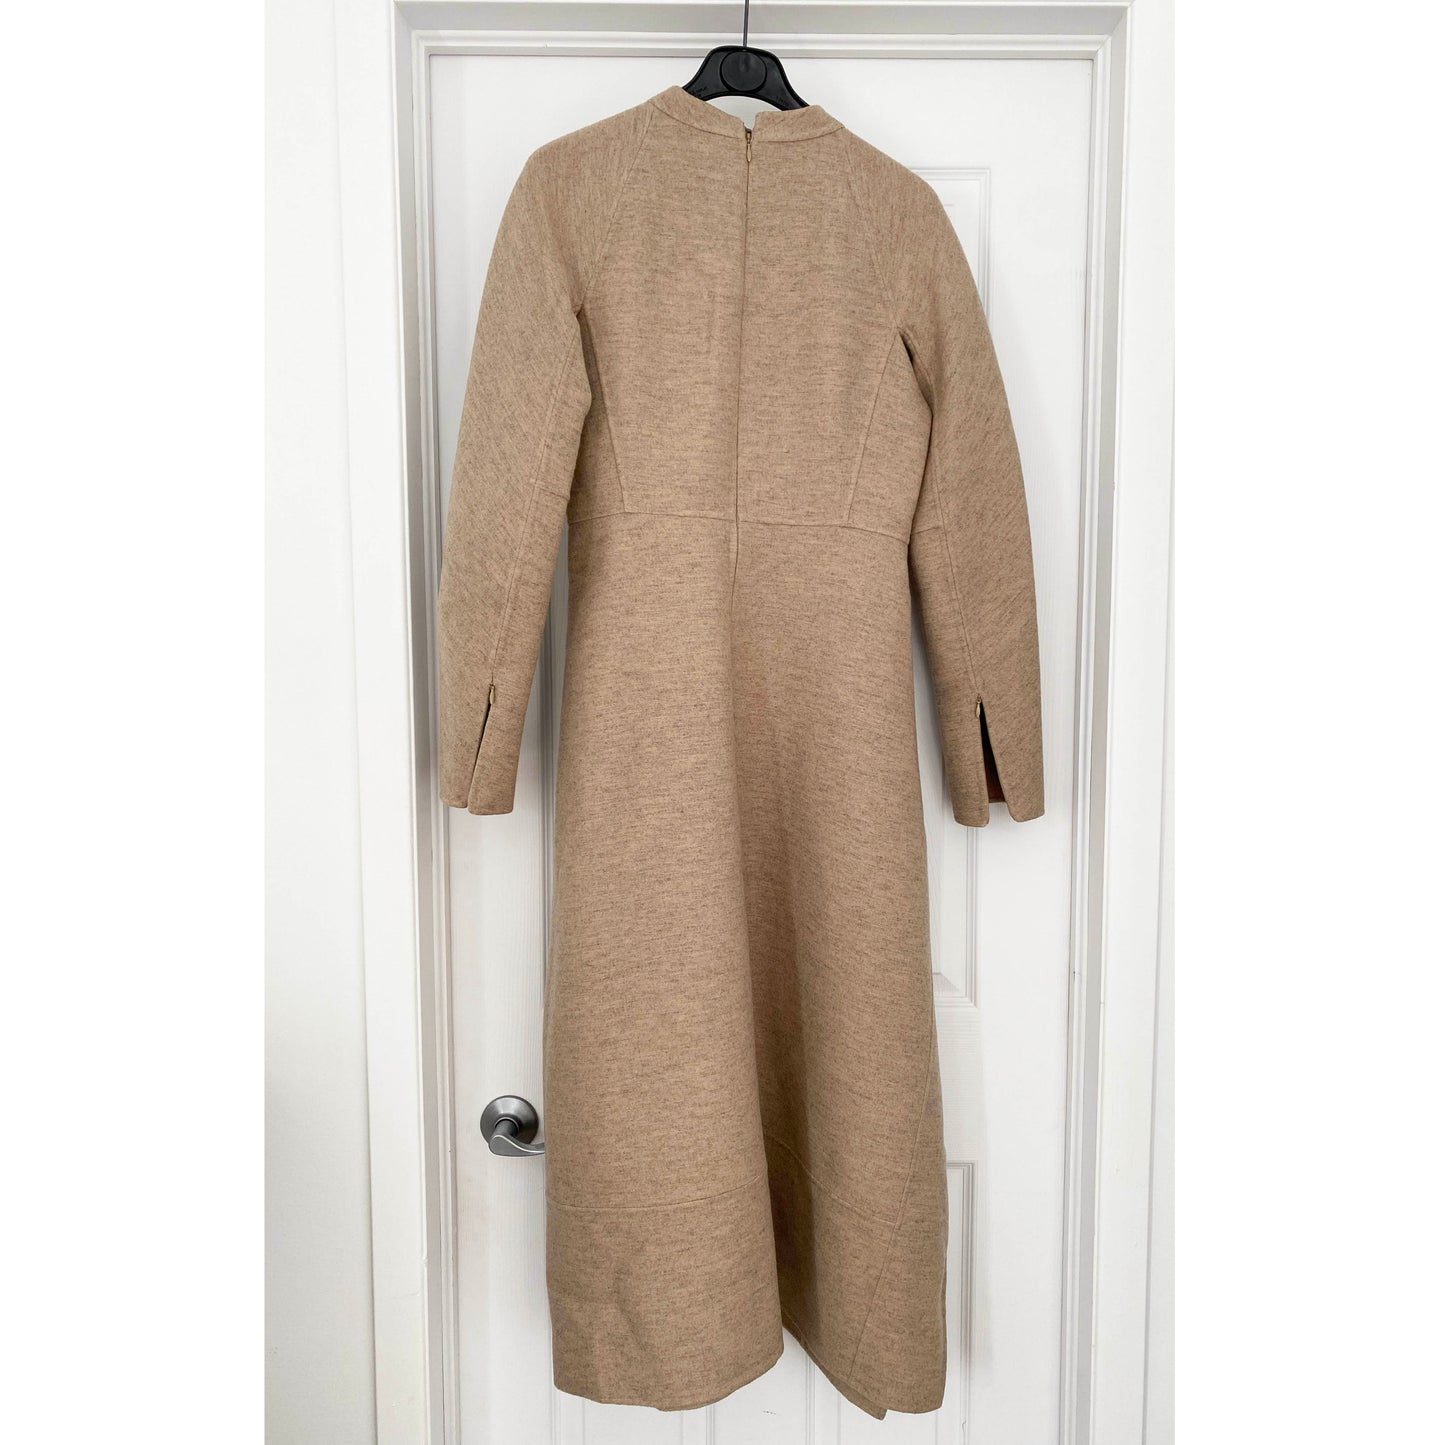 Robe en laine beige structurée Jil Sander « LEVEN », taille 34 (convient à une taille 4/6)